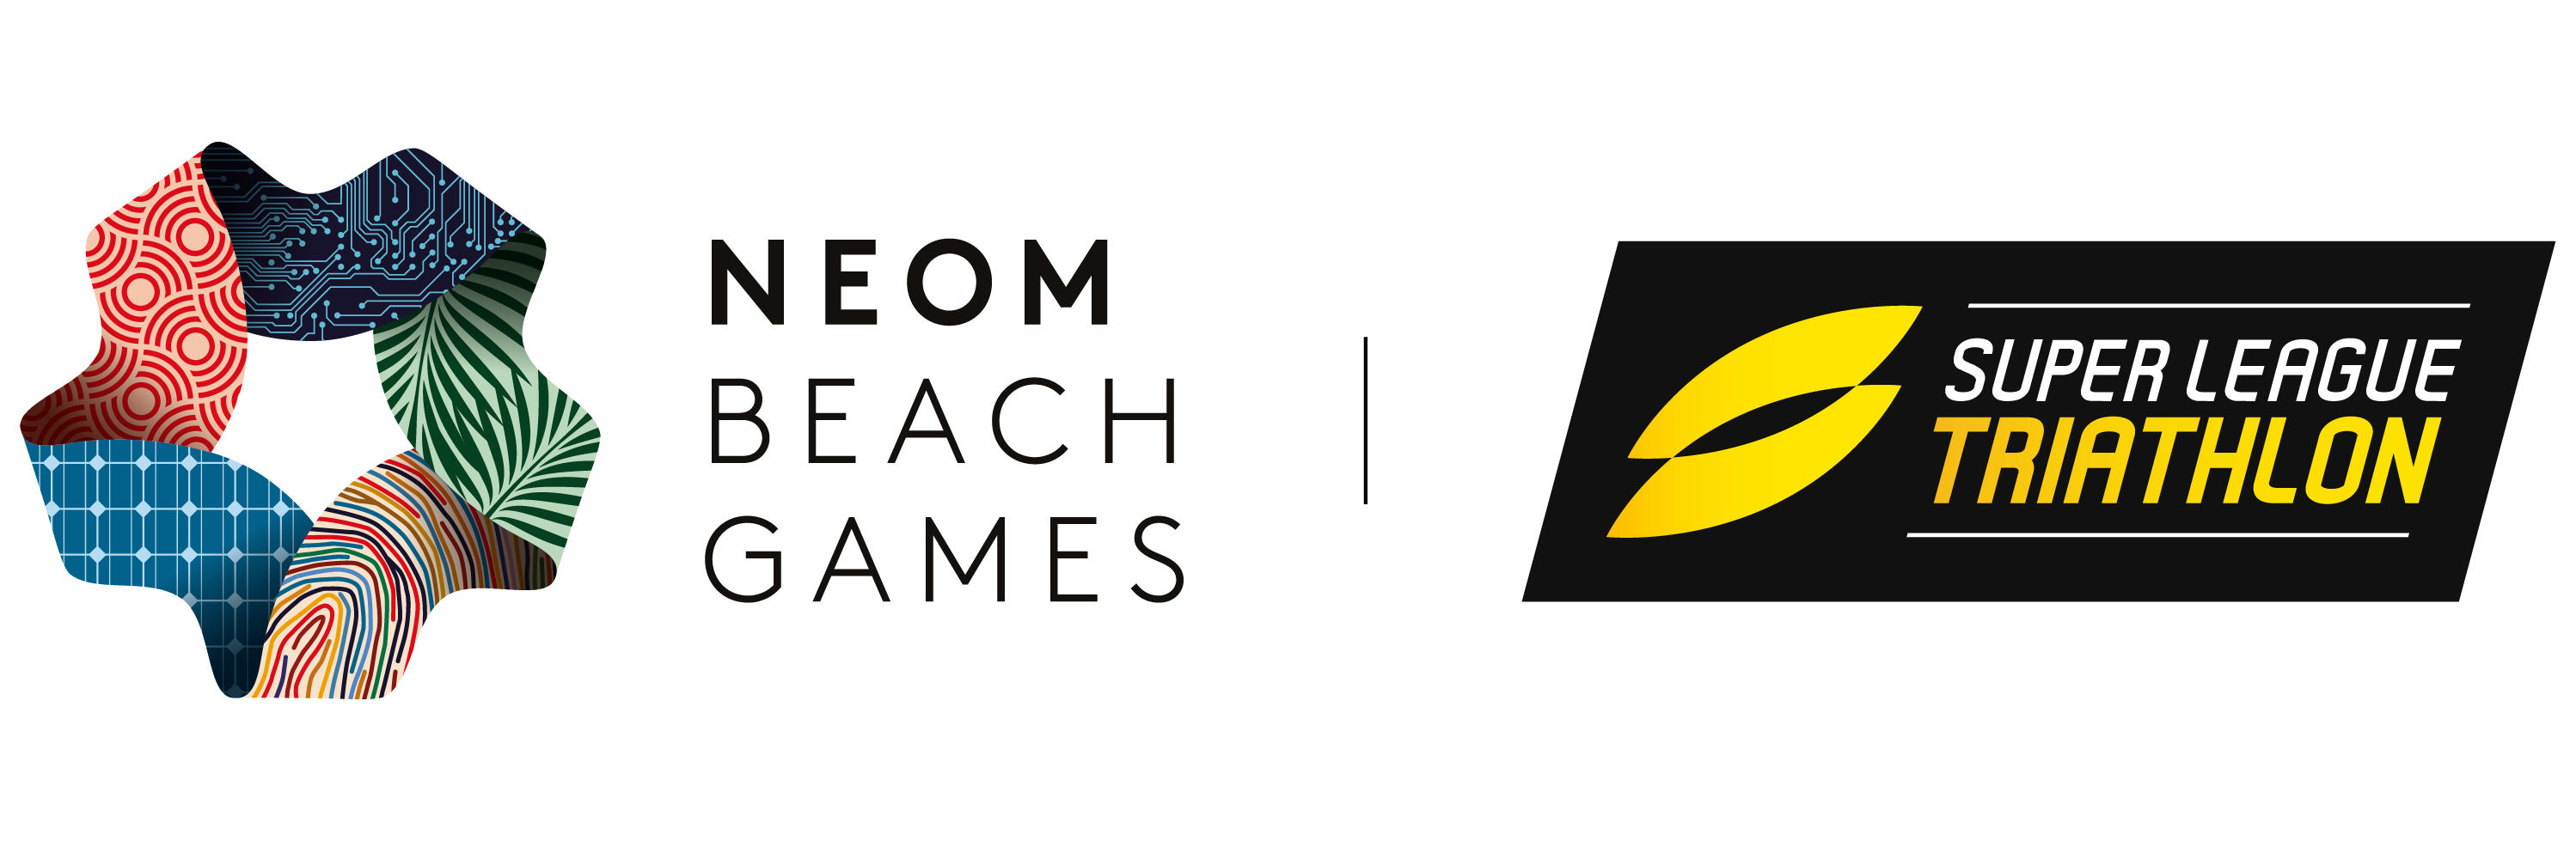 beach games including logo slt horz